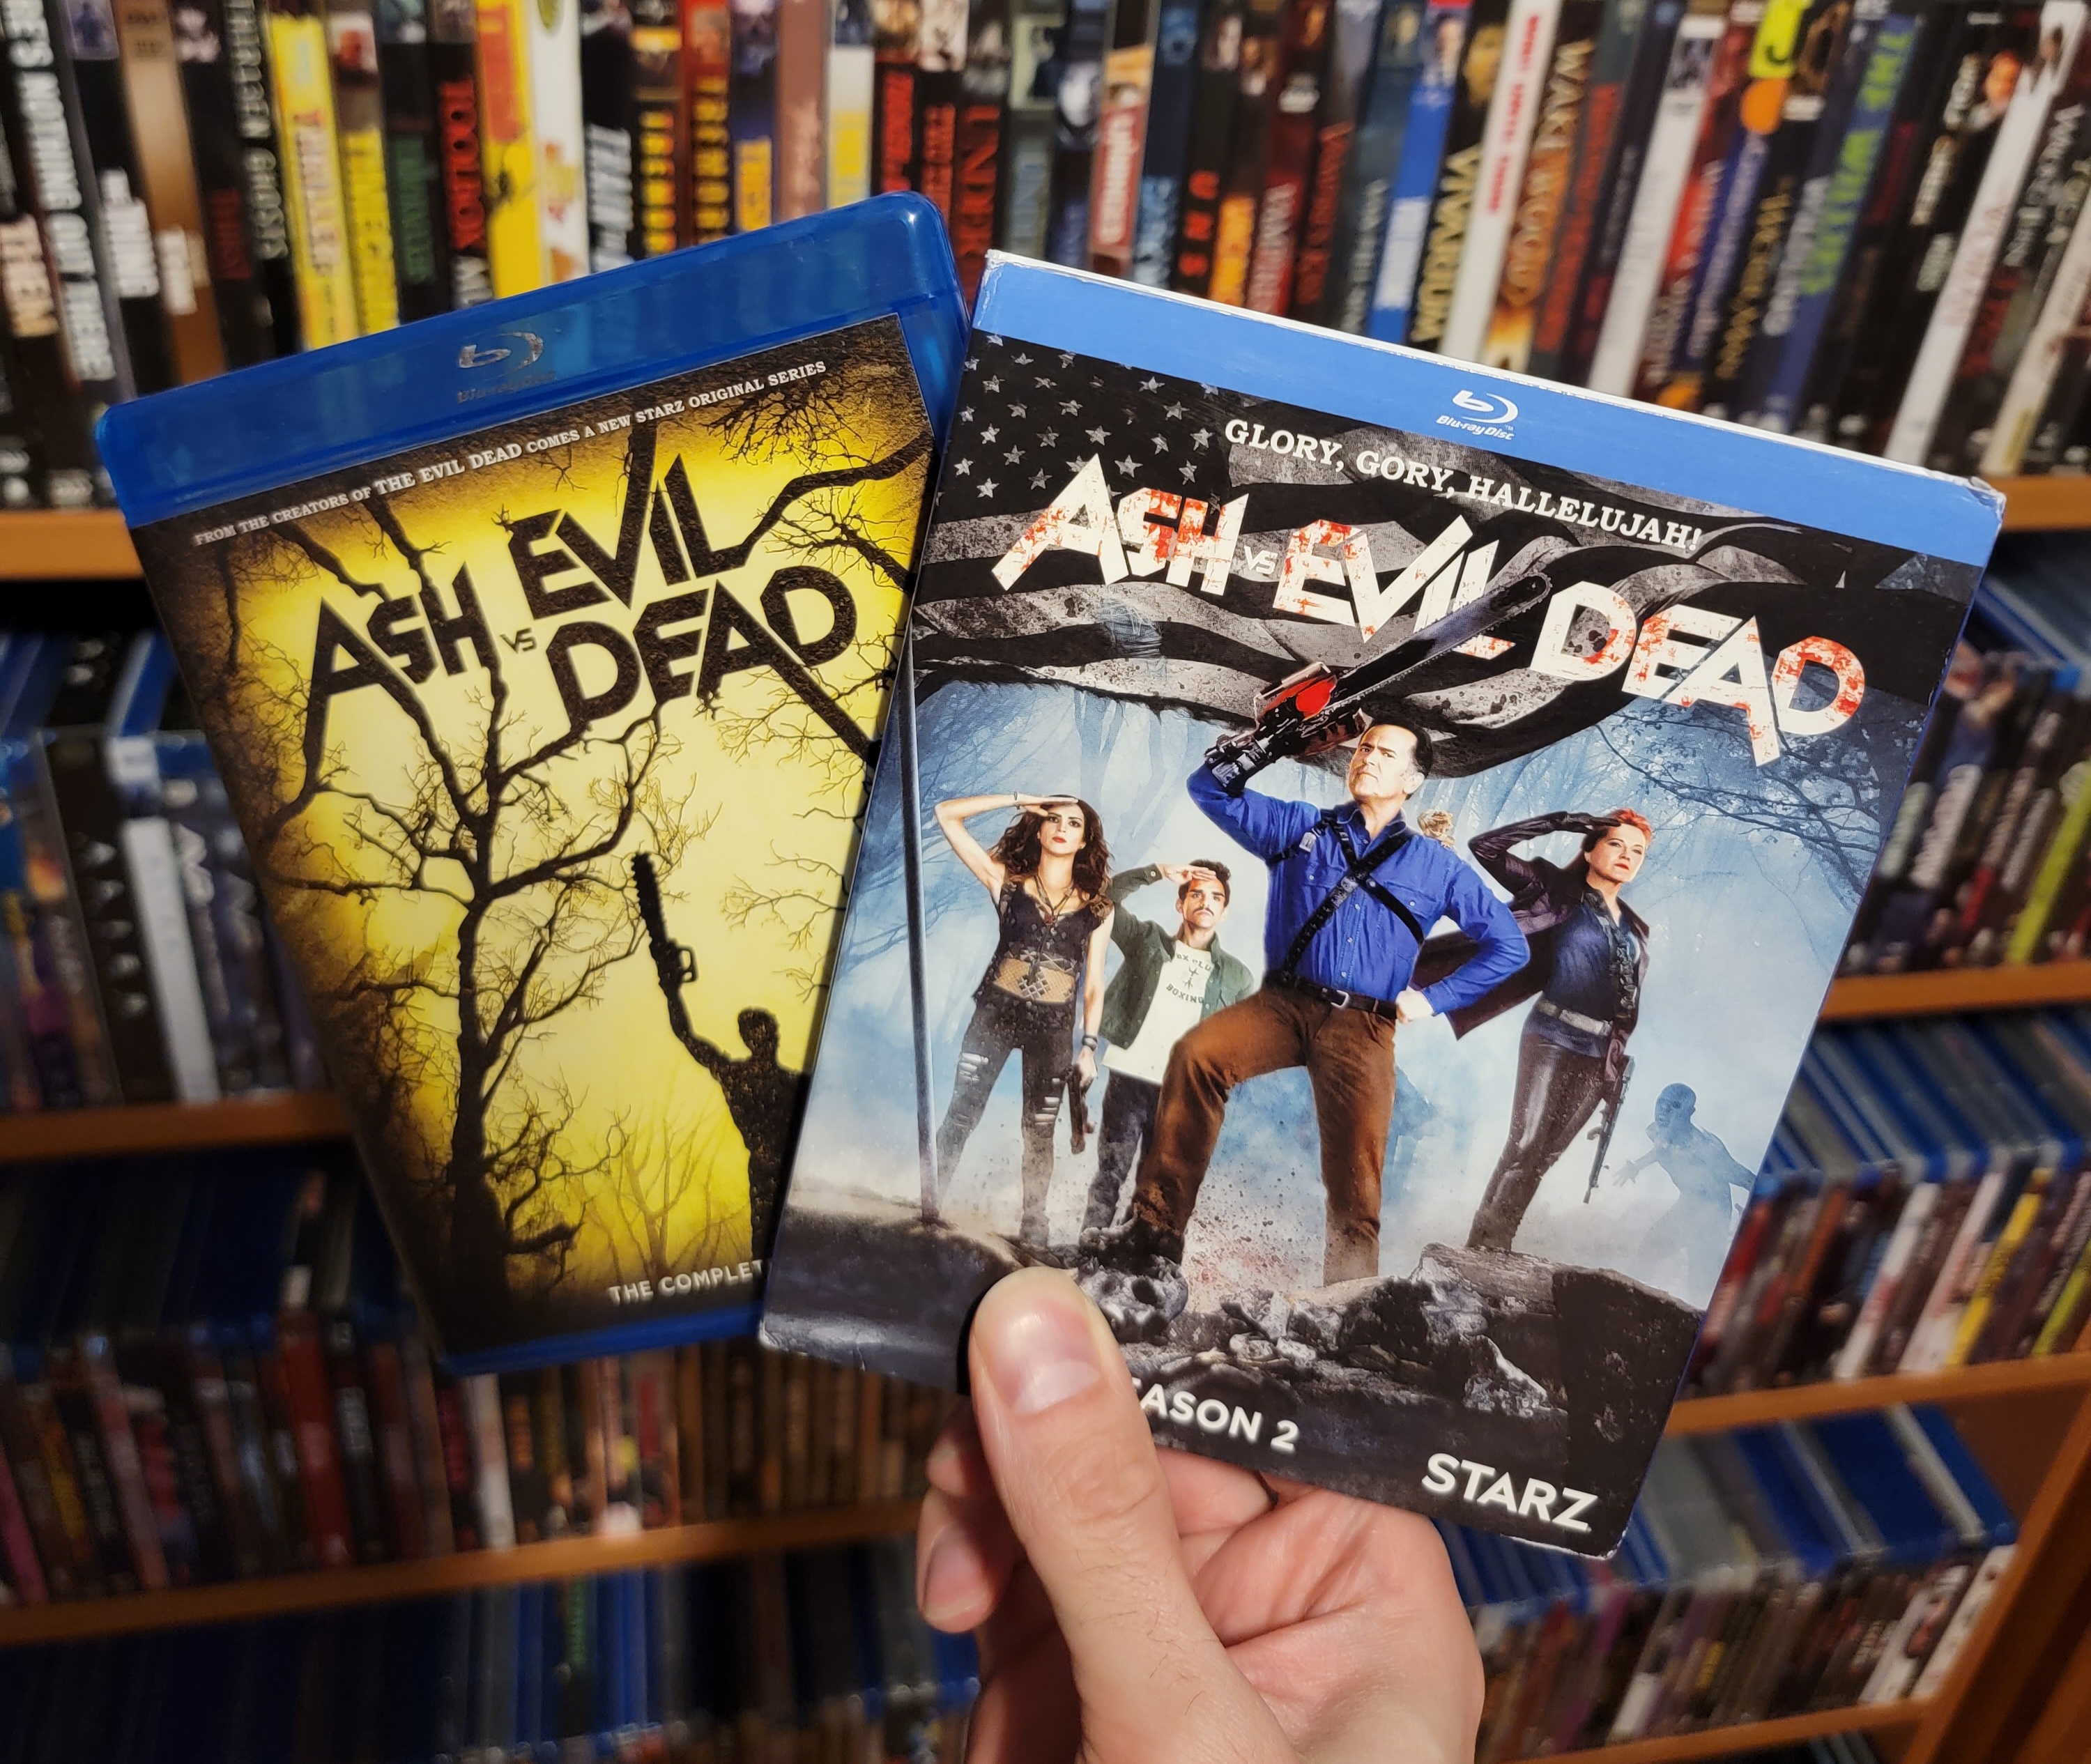 Evil Dead (Blu-ray) 